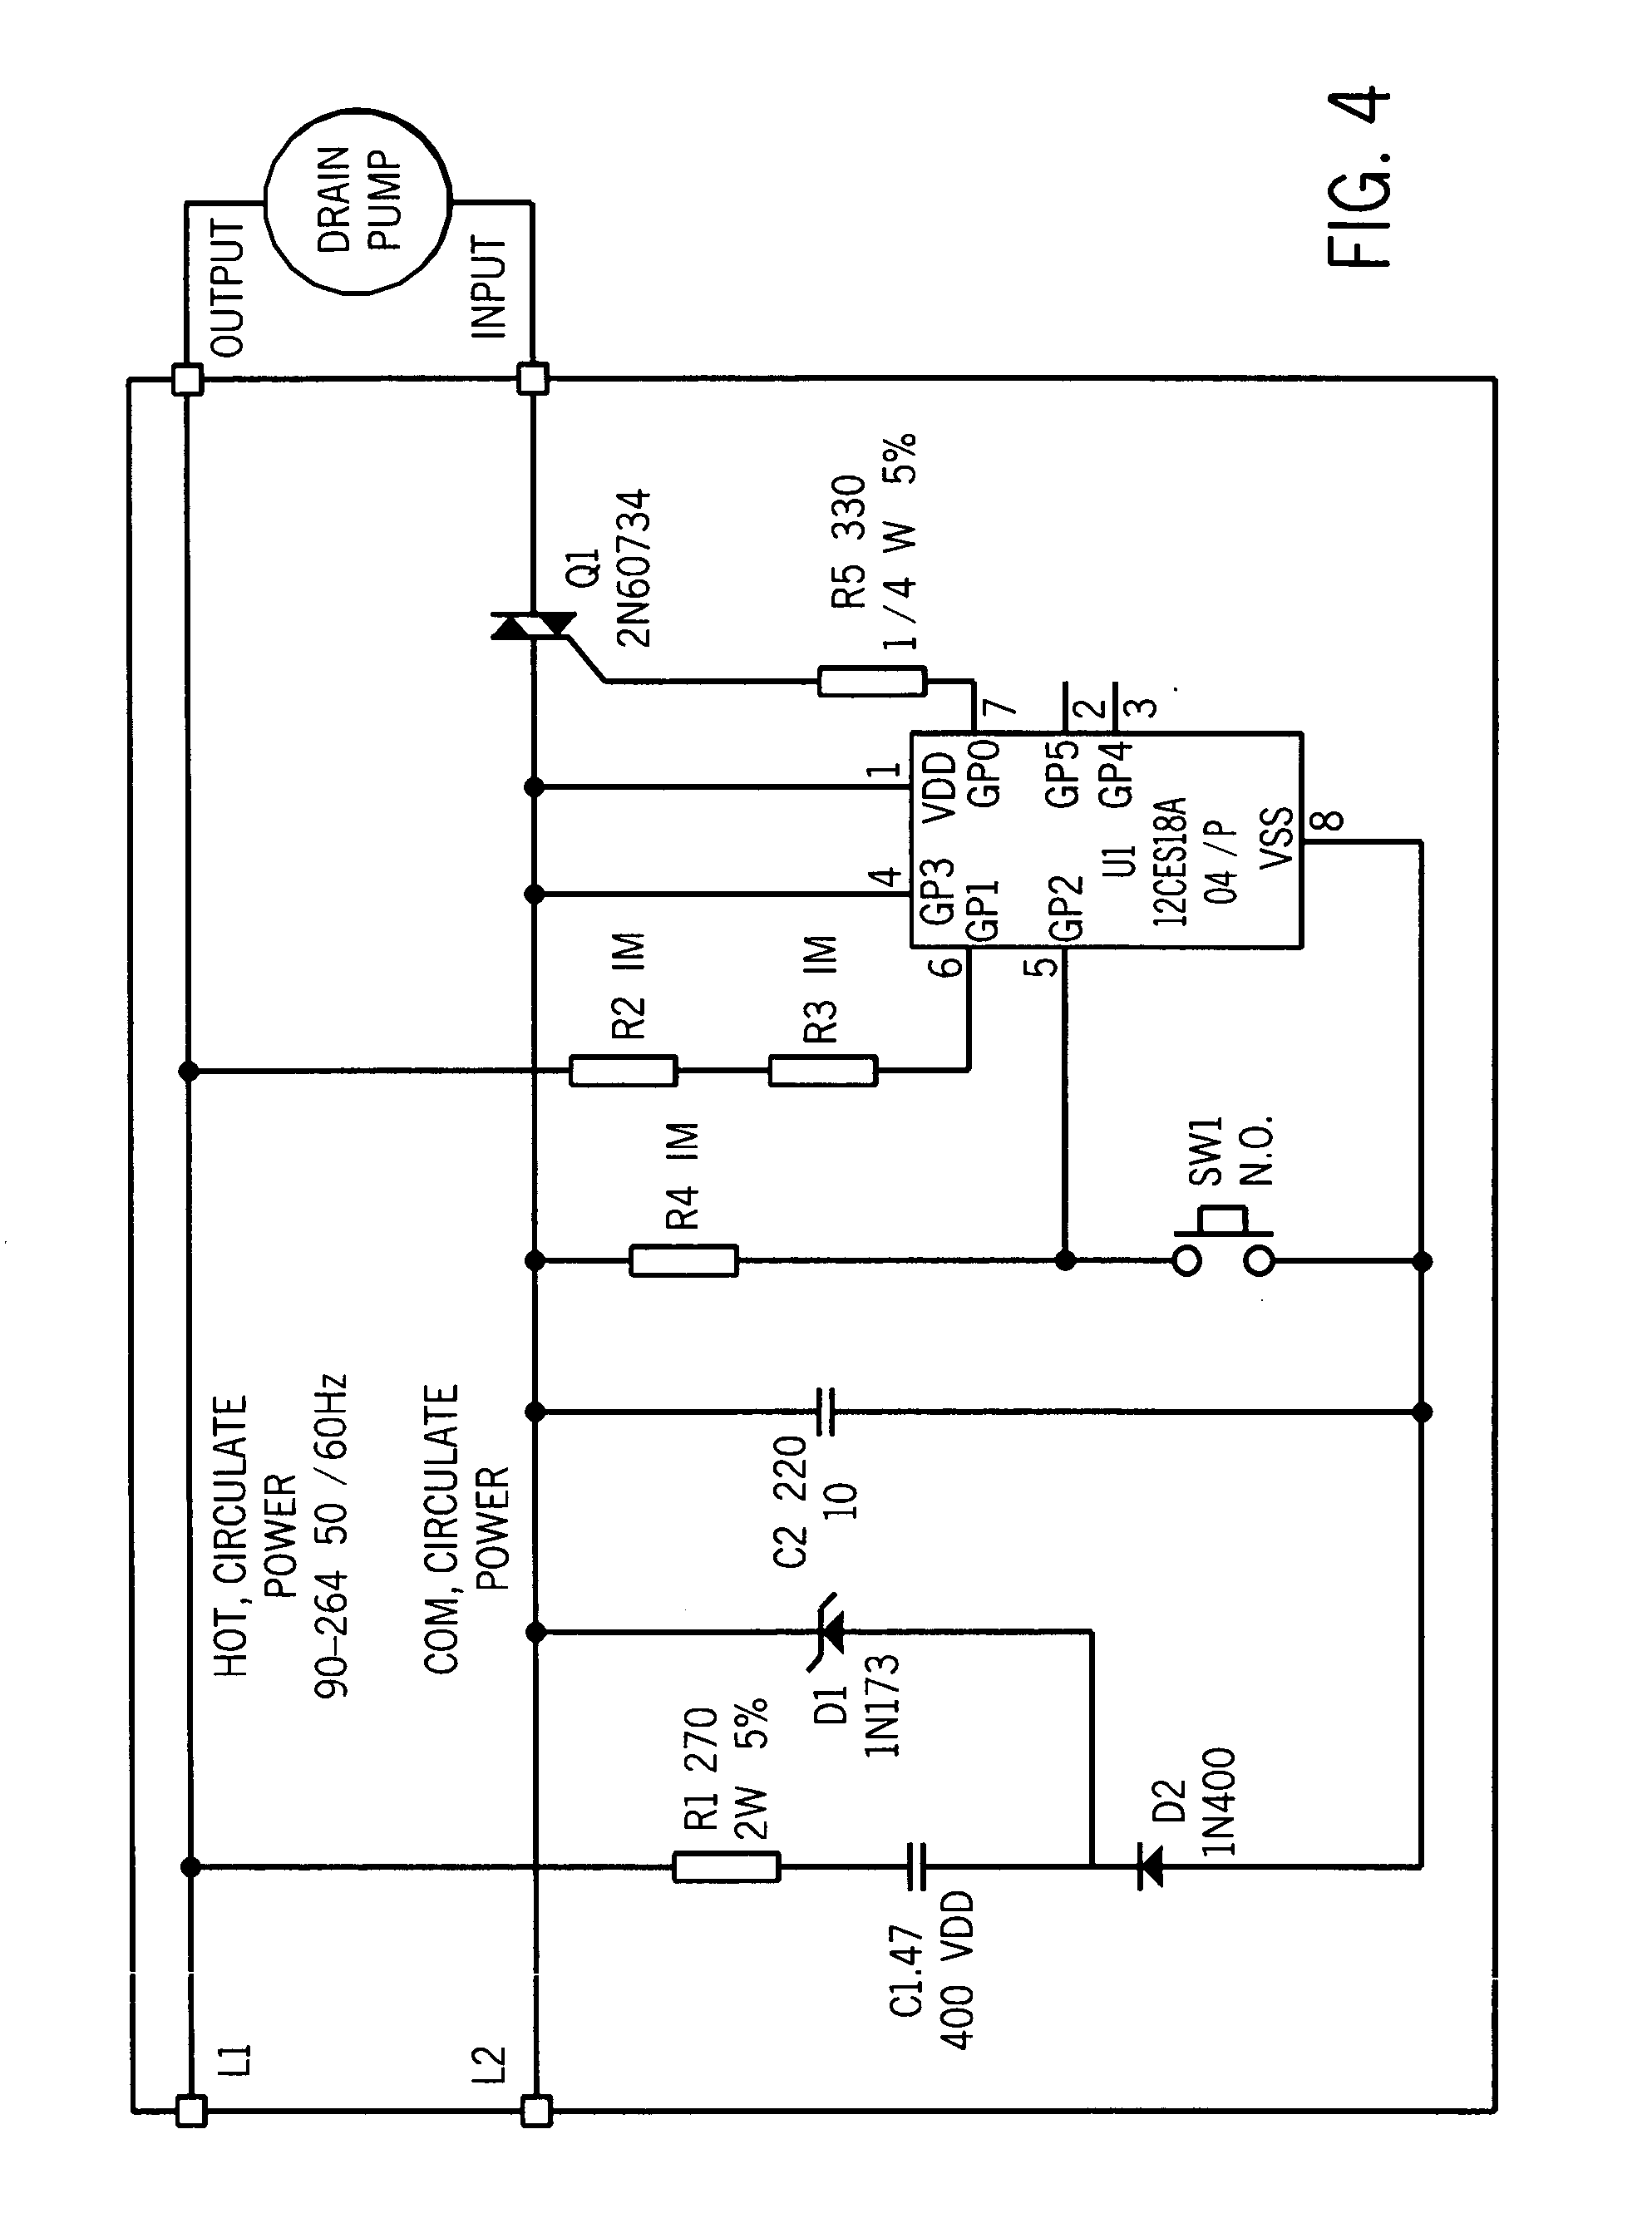 2 Speed Swamp Cooler Motor Wiring Diagram